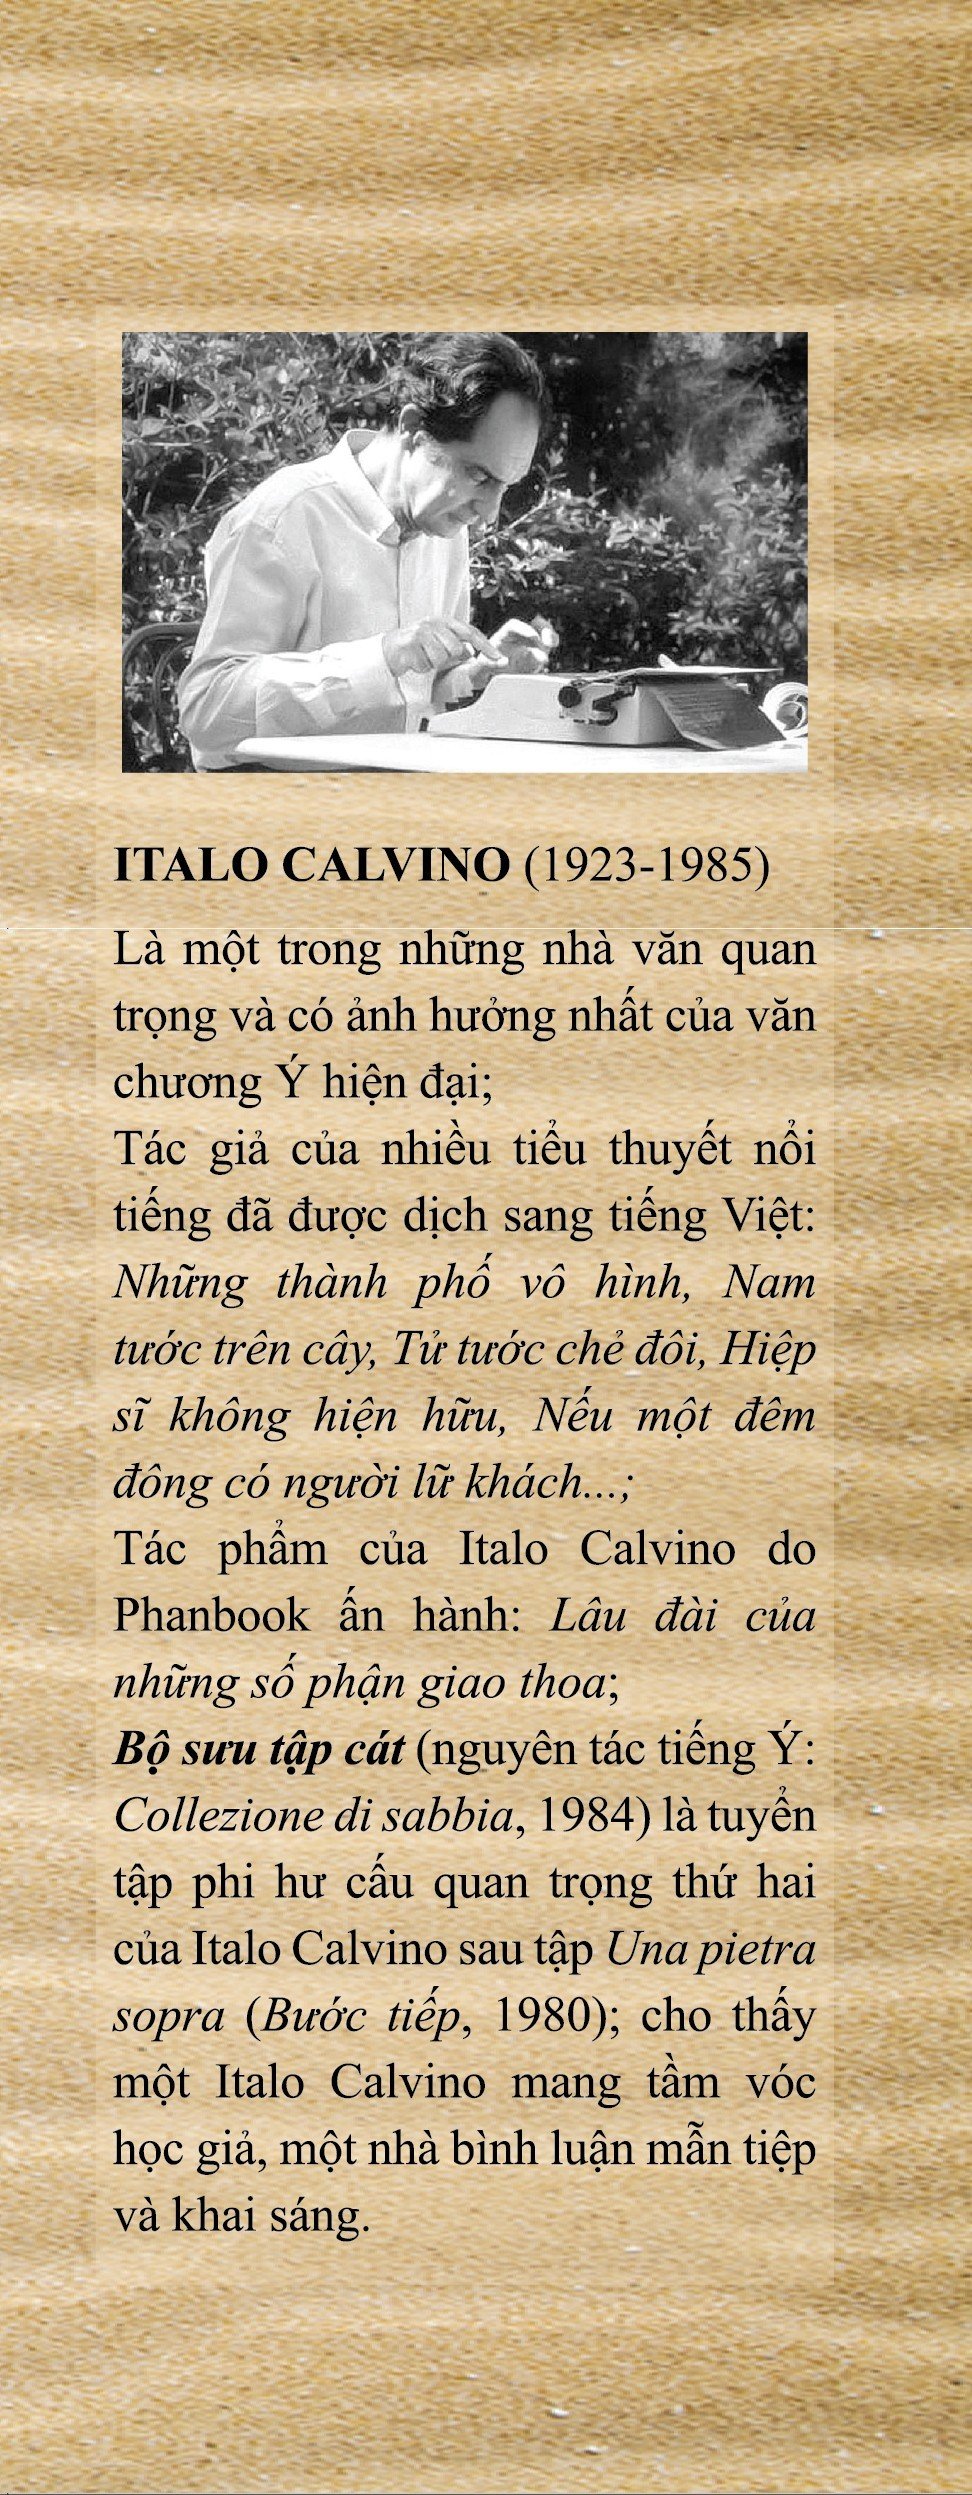 Bộ Sưu Tập Cát - Italo Calvino